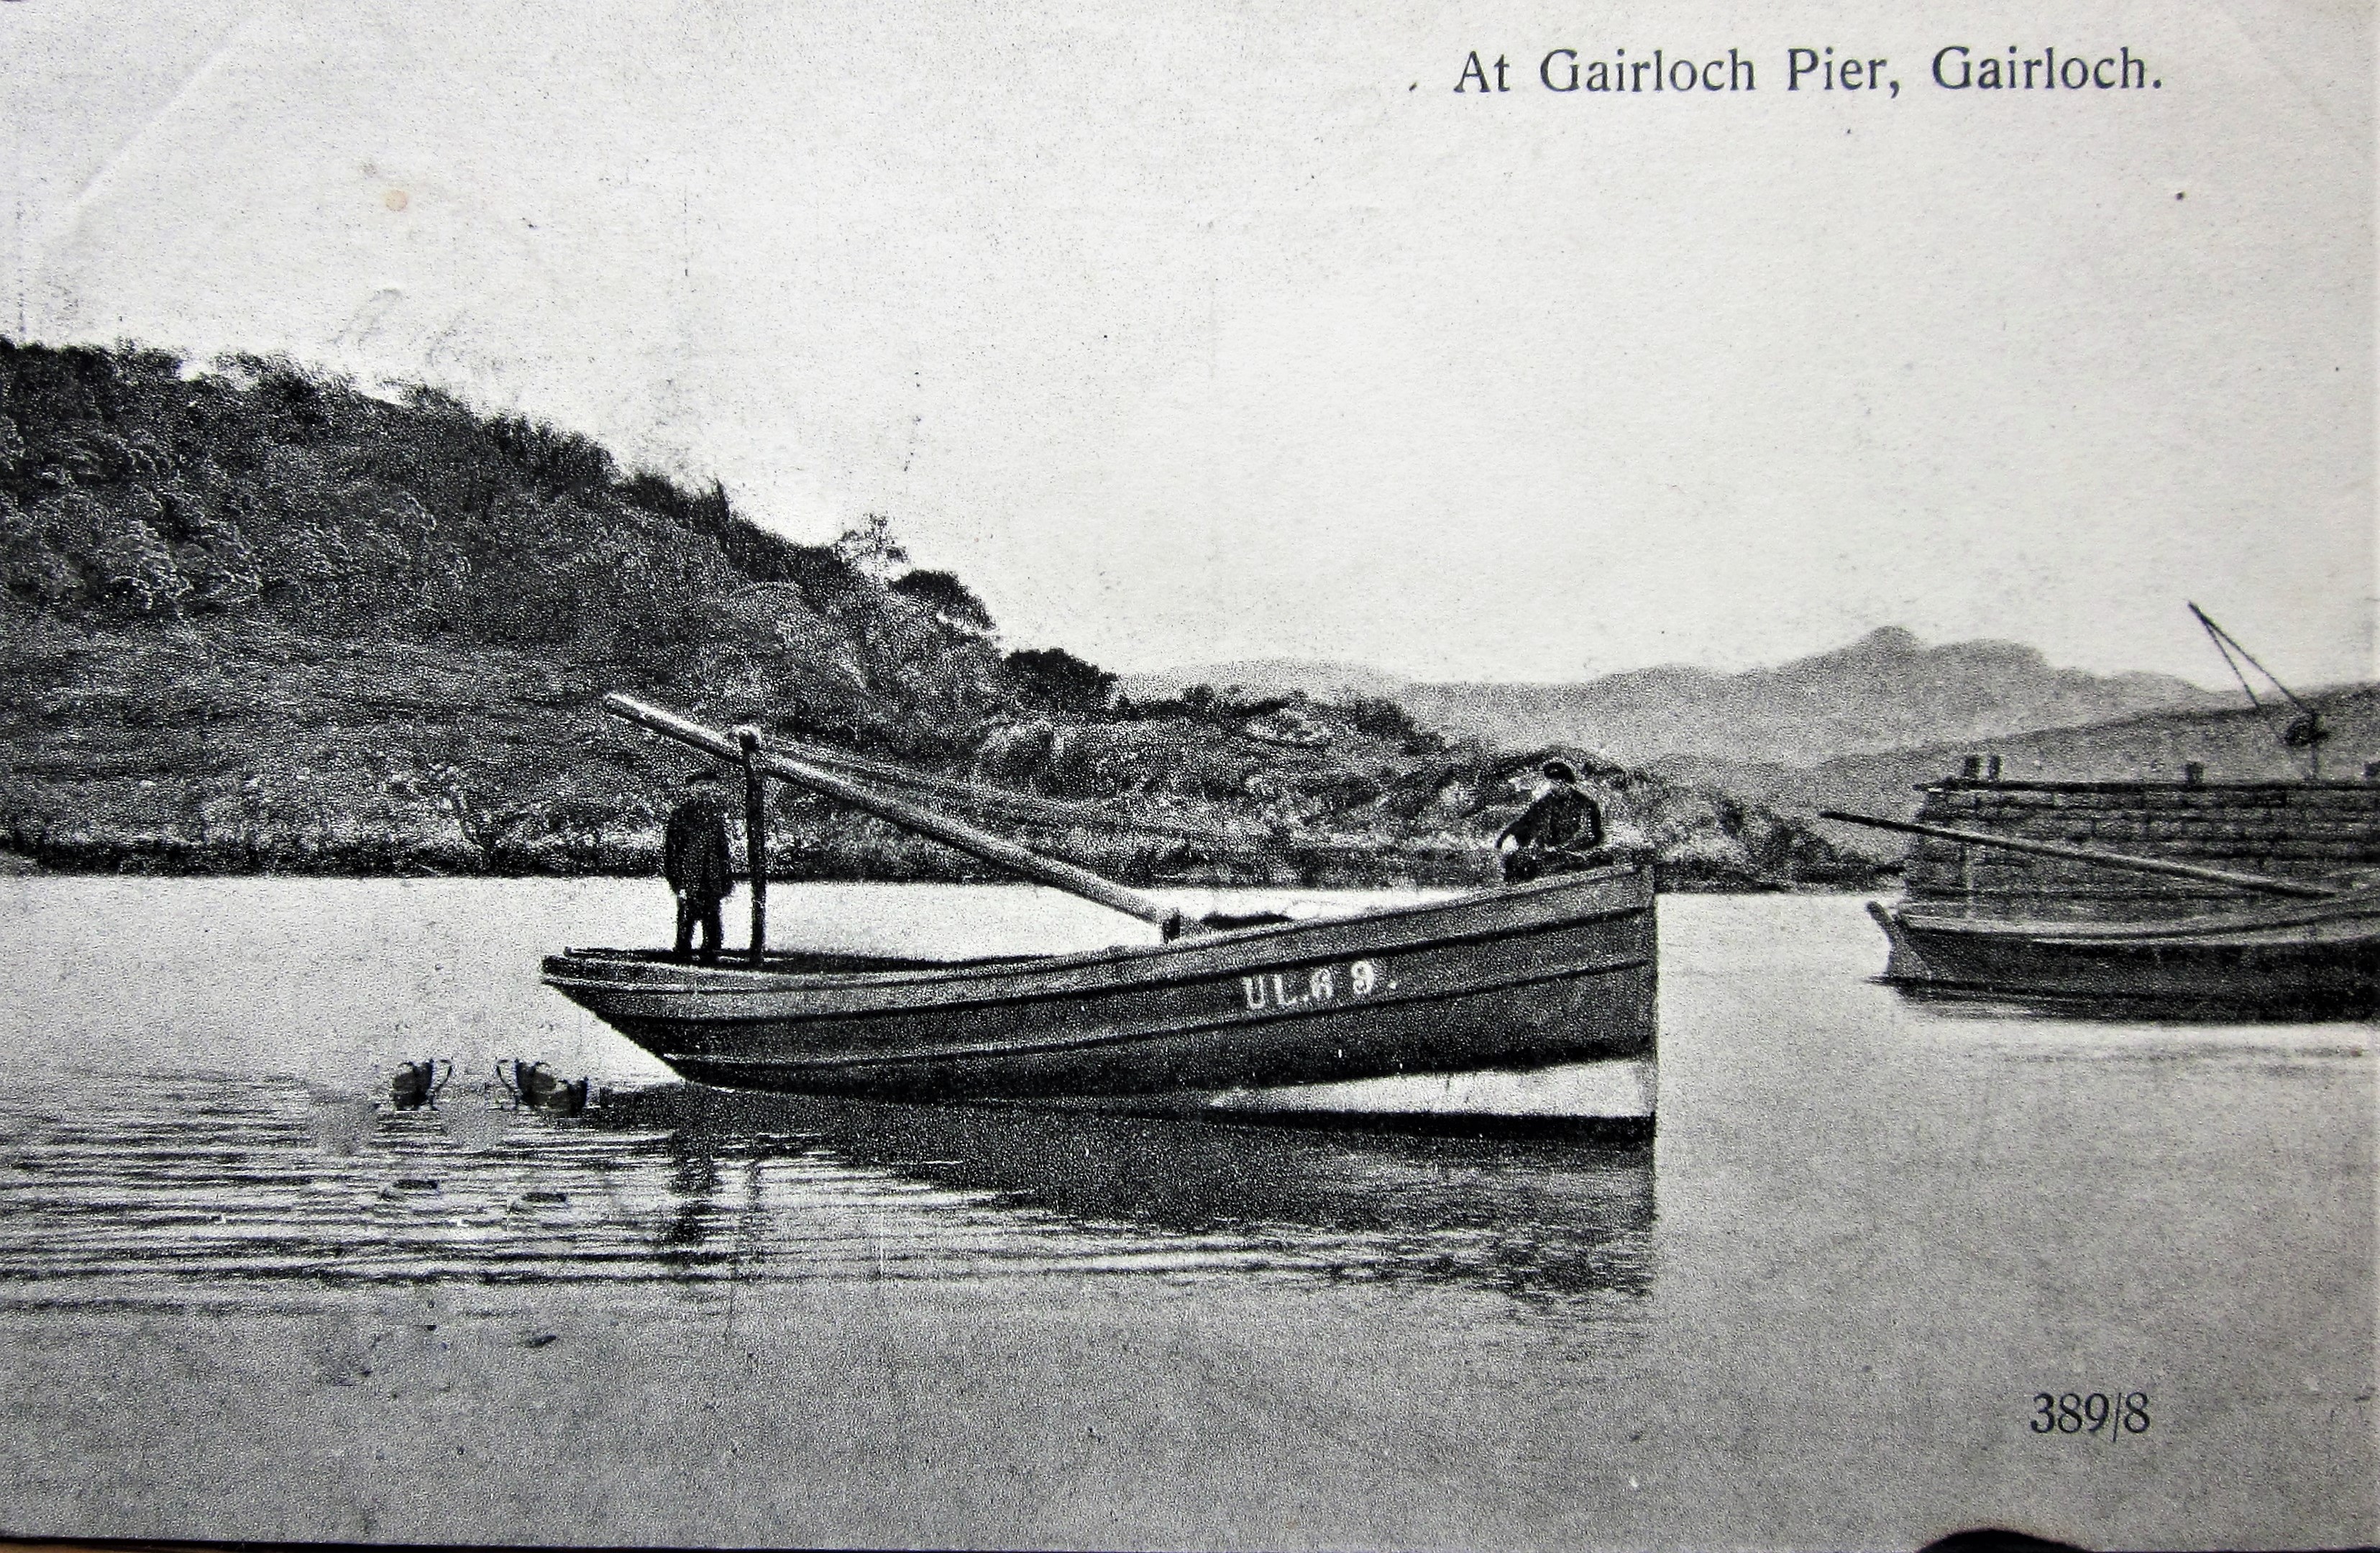 At Gairloch Pier, Gairloch